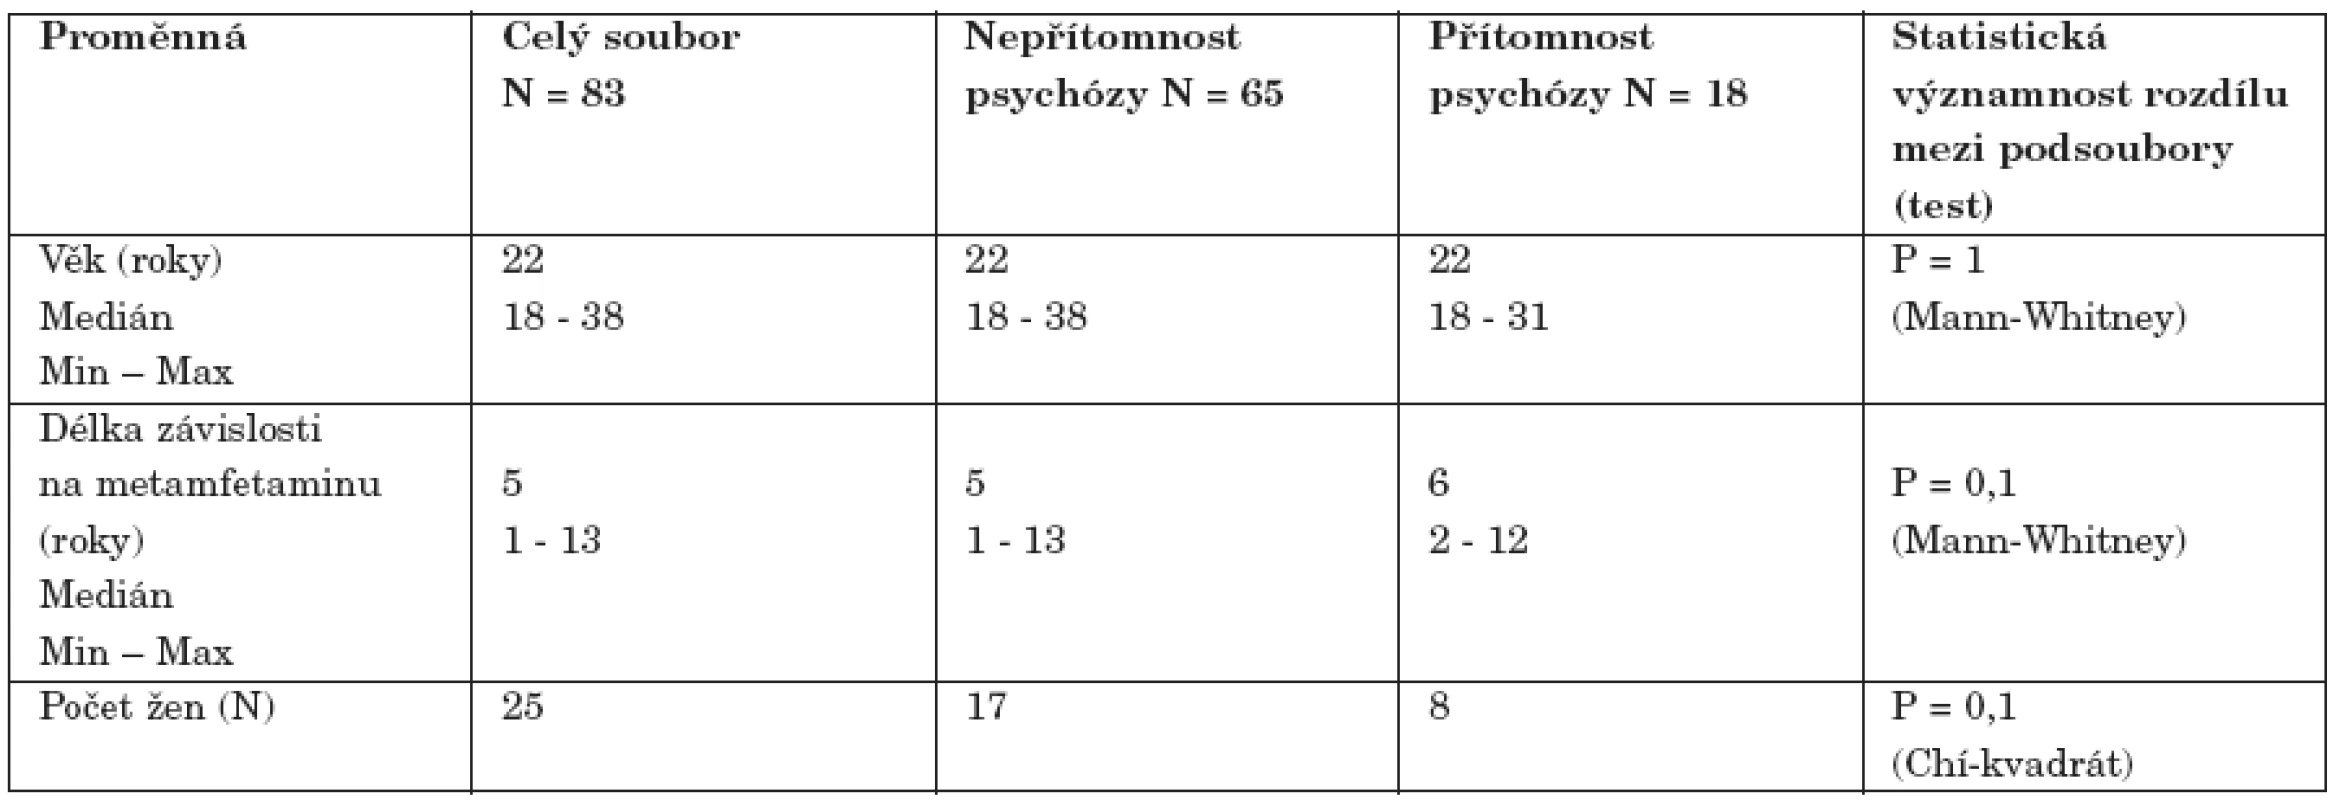 Vybrané demografické a klinické charakteristiky souboru závislých na metamfetaminu (N = 83)